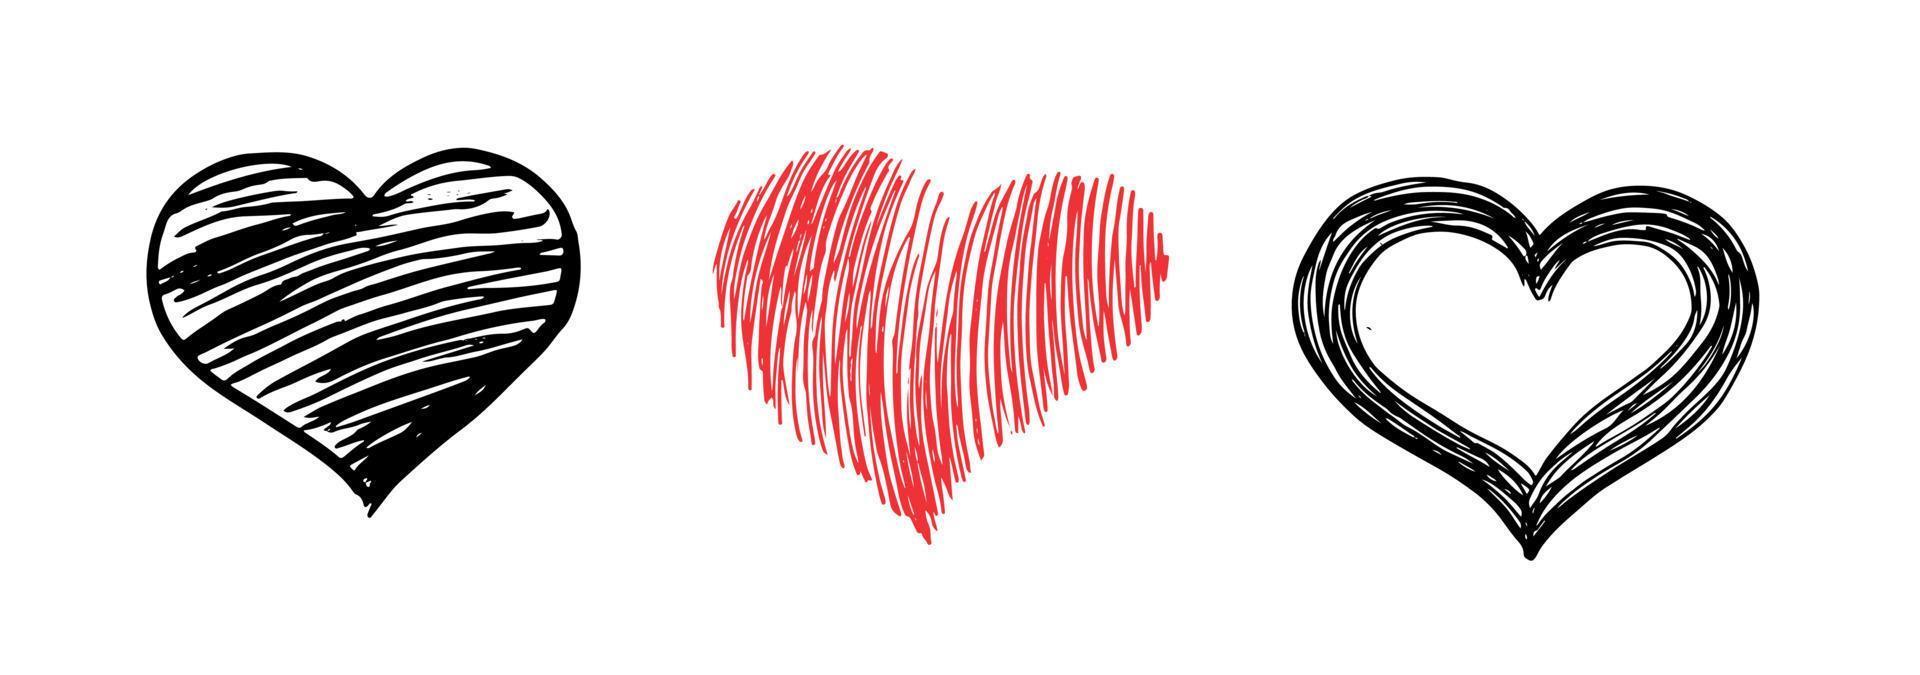 gruñido del corazón. día de San Valentín. ilustración dibujada a mano. vector